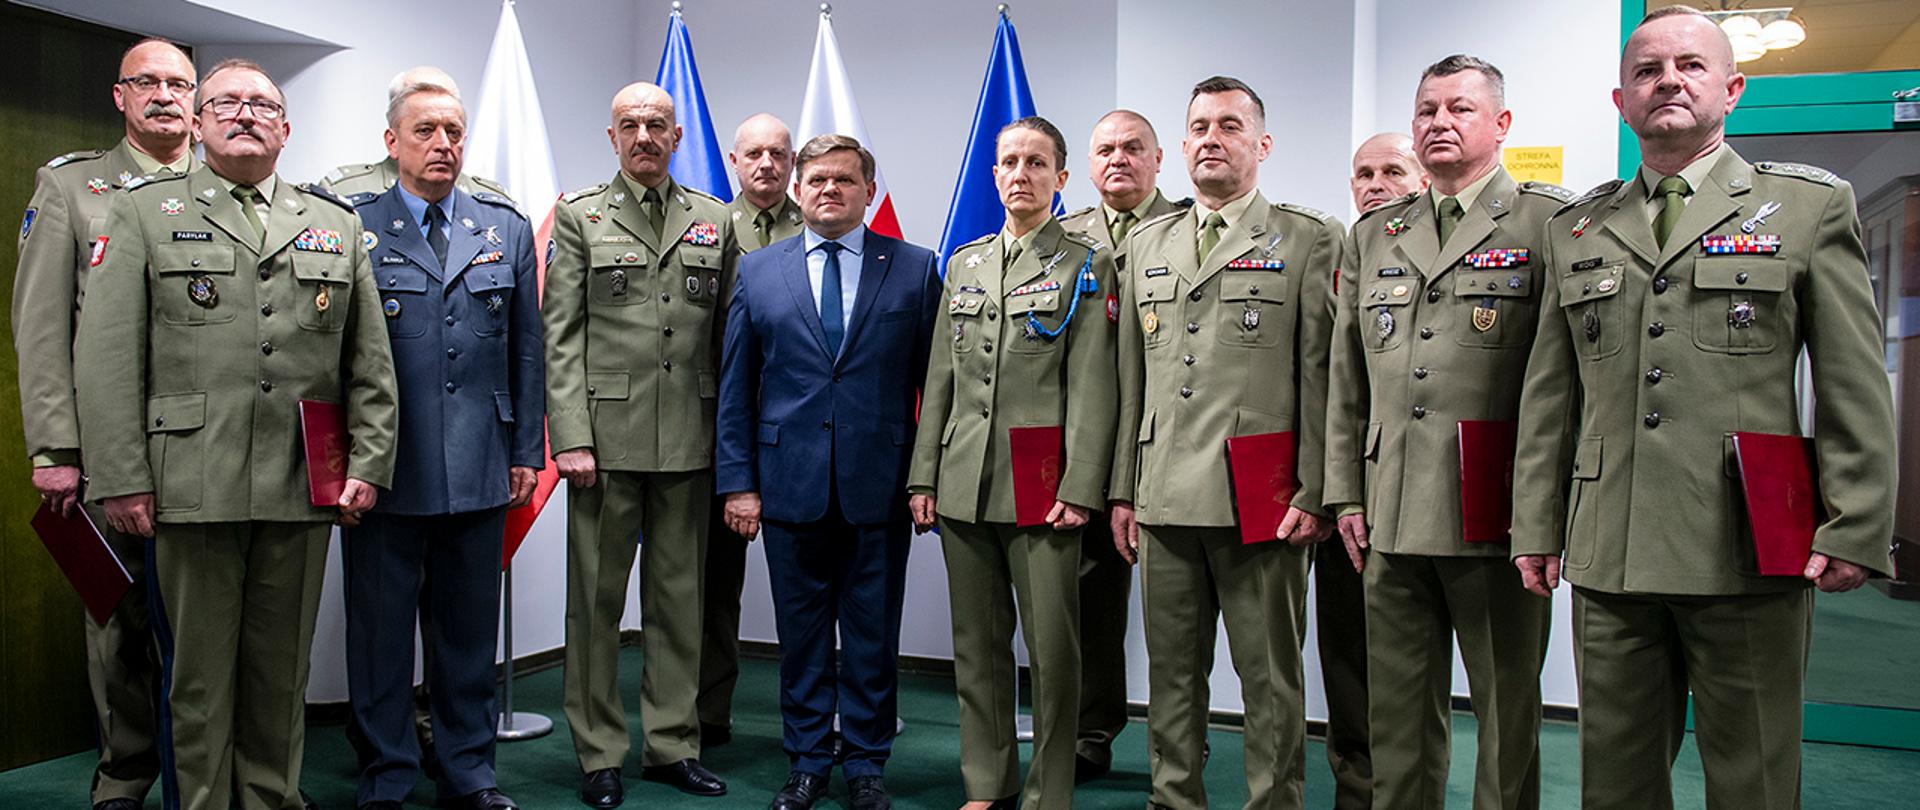 Wojciech Skurkiewicz, sekretarz stanu w MON stoi z nowo mianowanymi żołnierzami Wojska Polskiego. W tle flagi Polski i NATO.